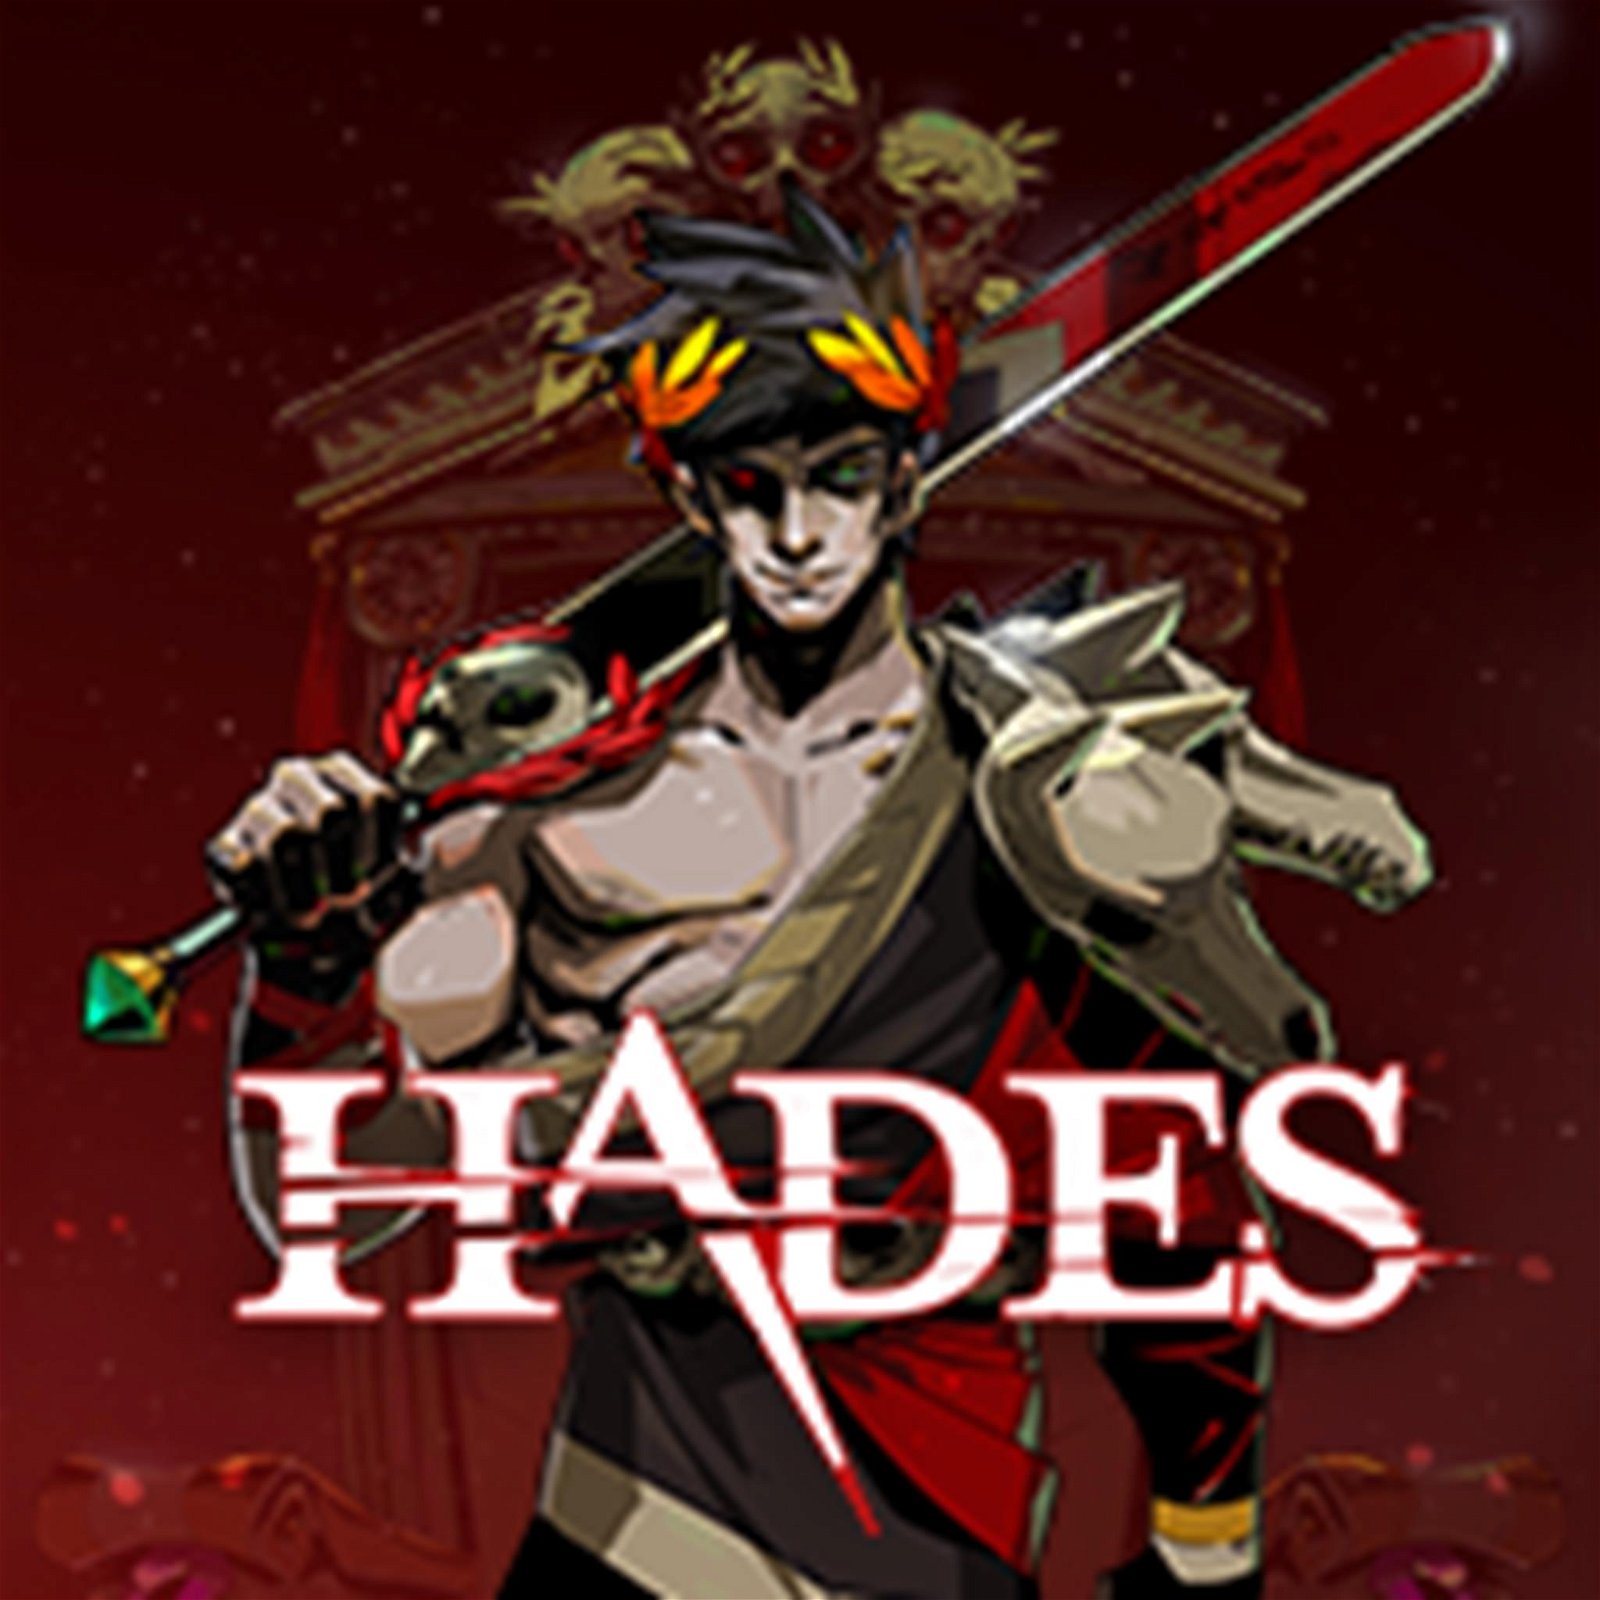 Hades (ou o jogo do ano para muita gente) 